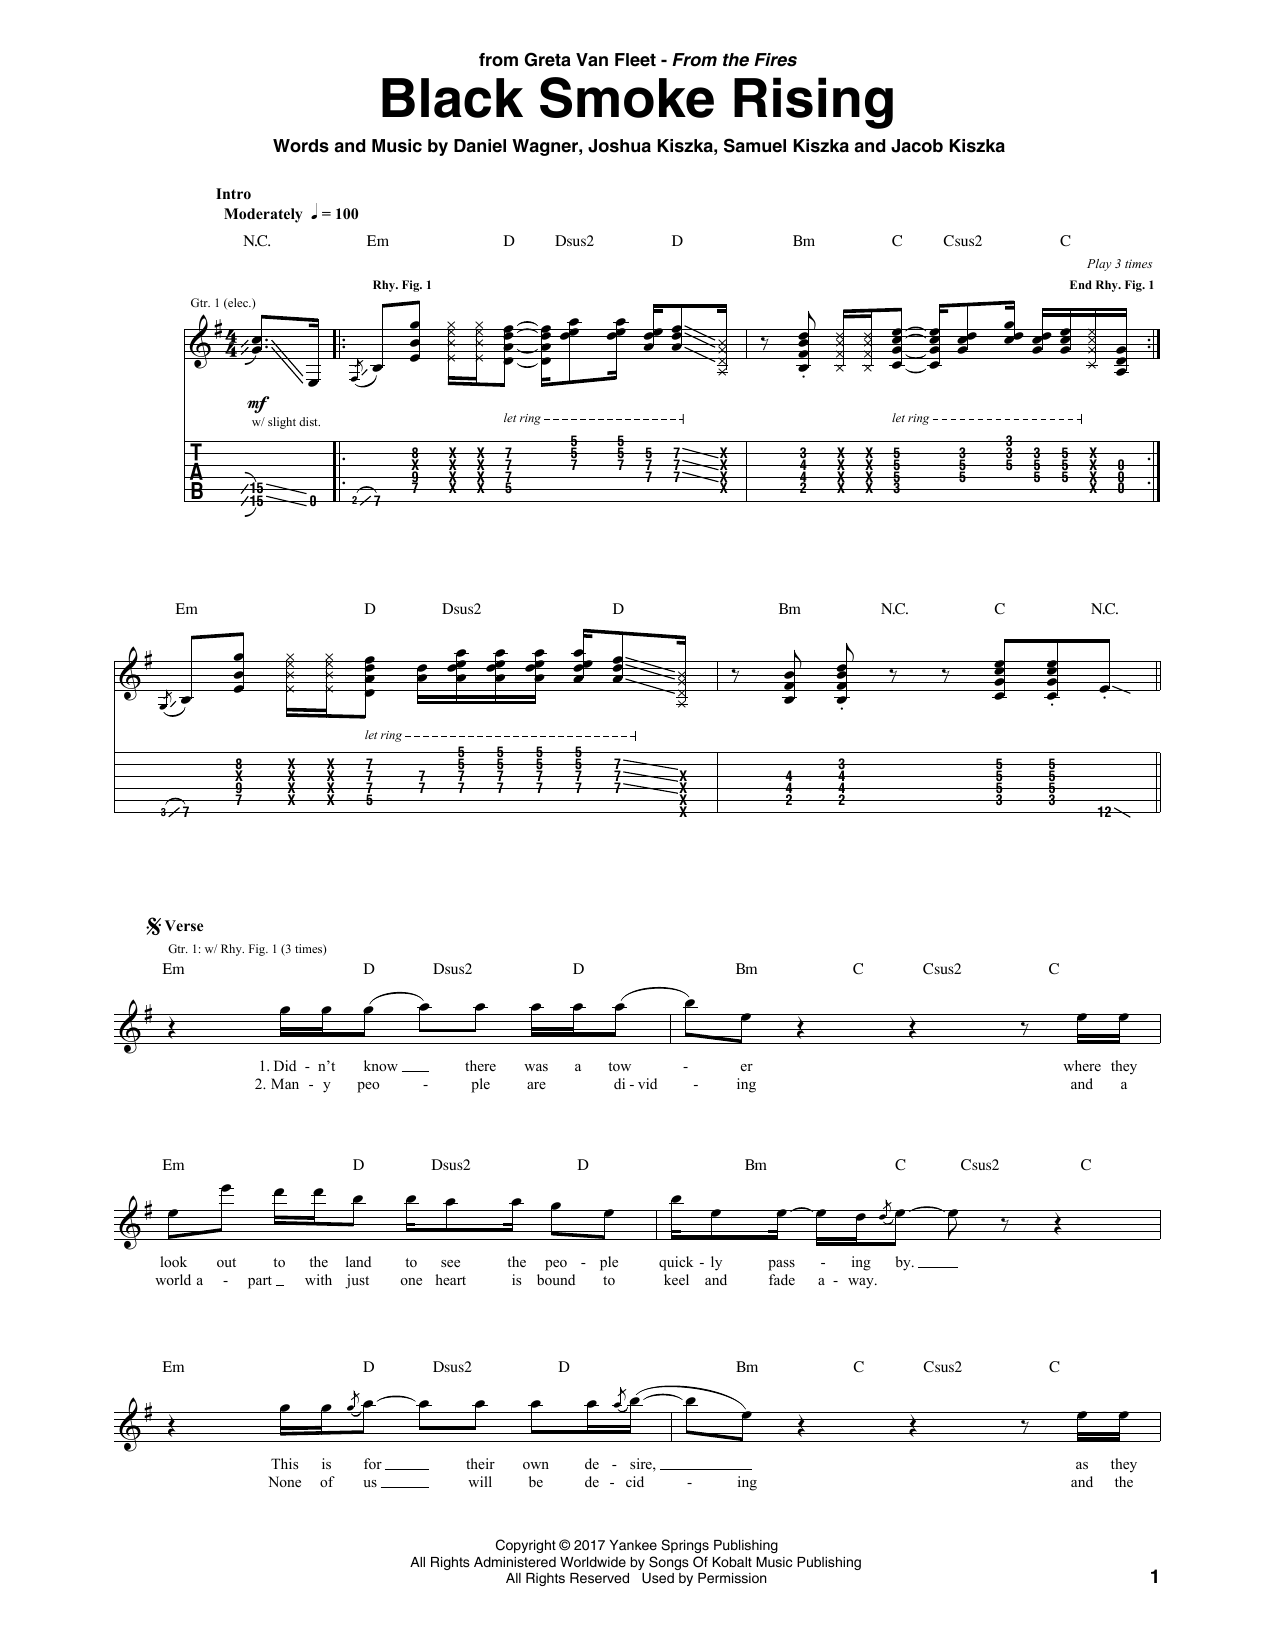 Greta Van Fleet Black Smoke Rising Sheet Music Notes & Chords for Guitar Tab - Download or Print PDF